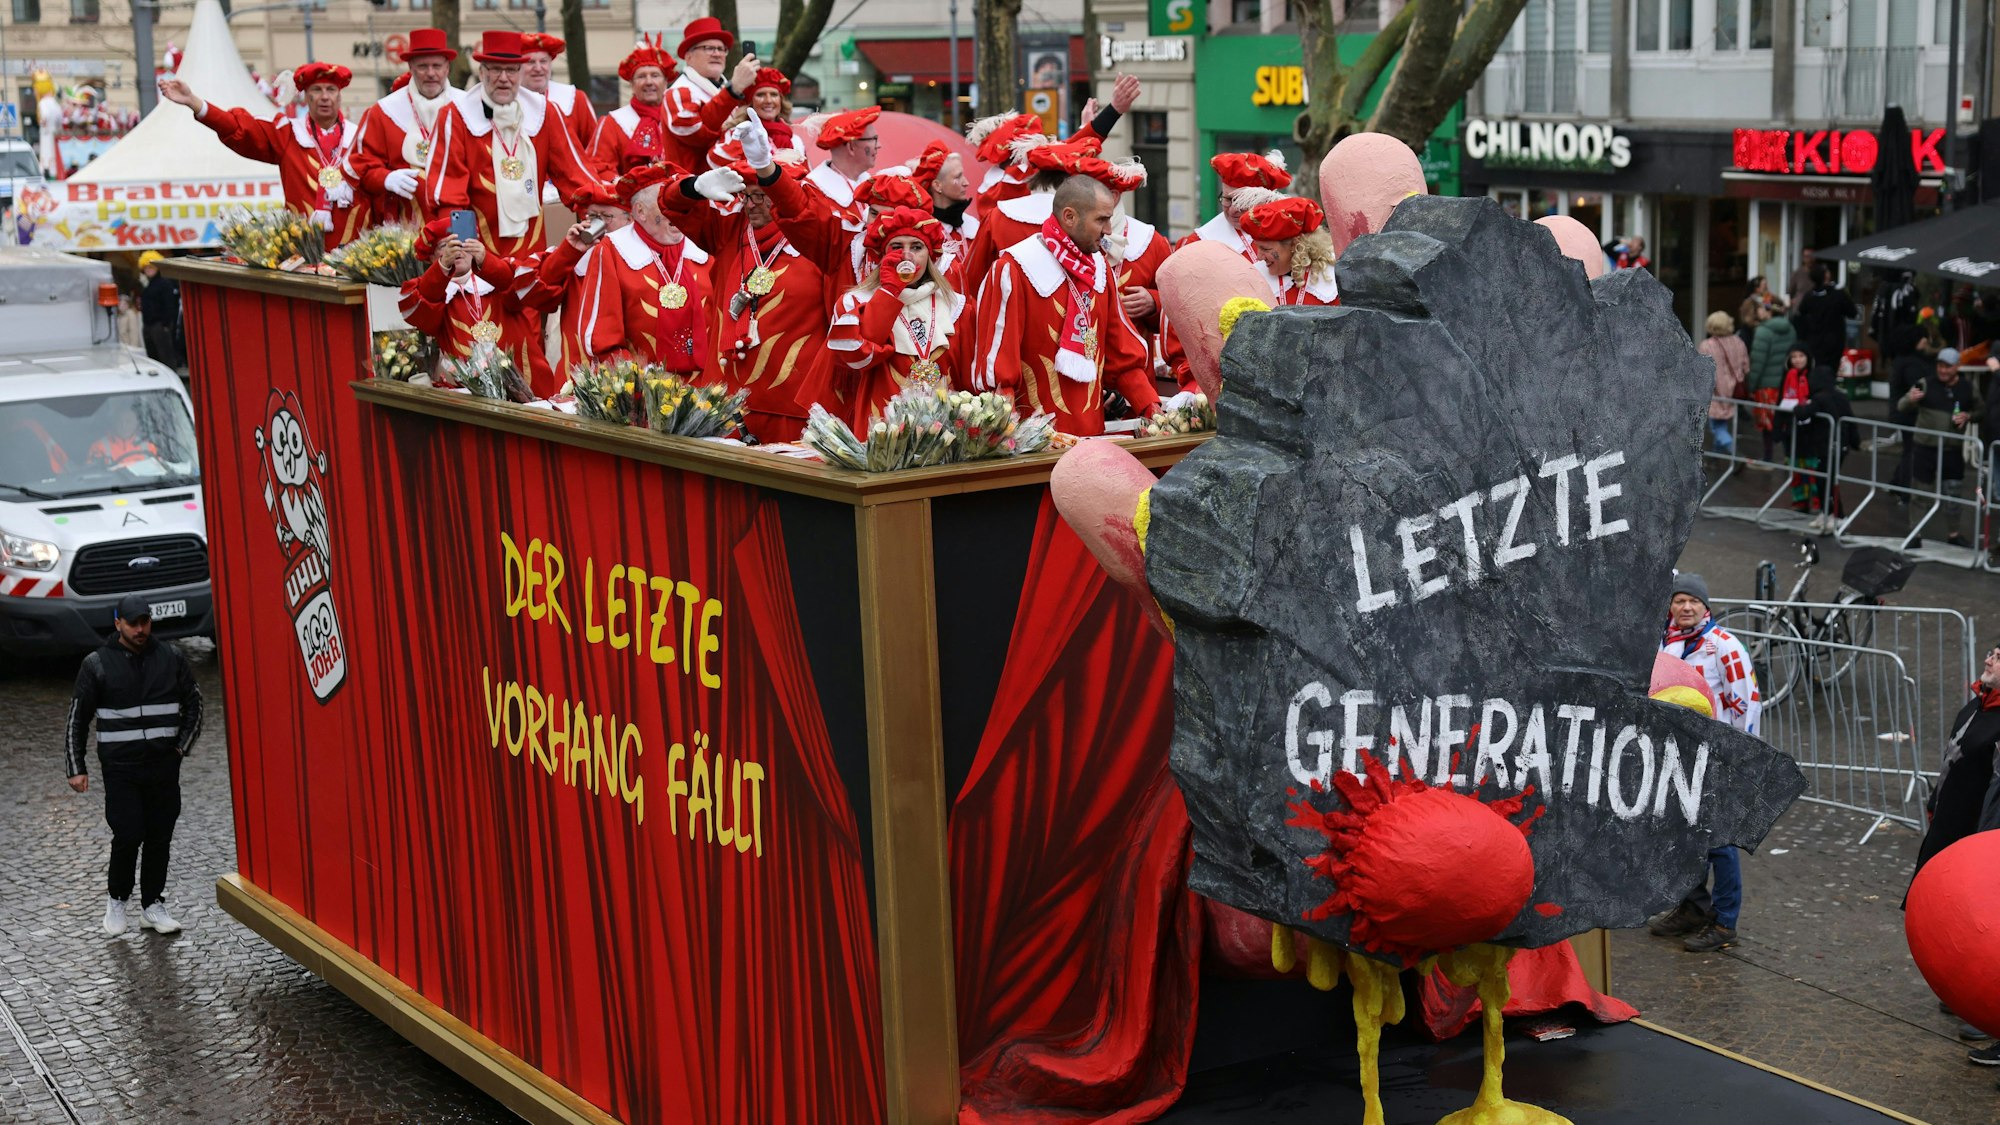 Vor ein paar Tagen hat die Letzte Generation angekündigt, künftig vom Festkleben auf Straßen abzusehen. Vergessen hat man ihr die vielen Stunden Stillstand auf deutschen Straßen wohl noch nicht. Im Kölner Karneval sind sie Ziel von faulem Gemüse.